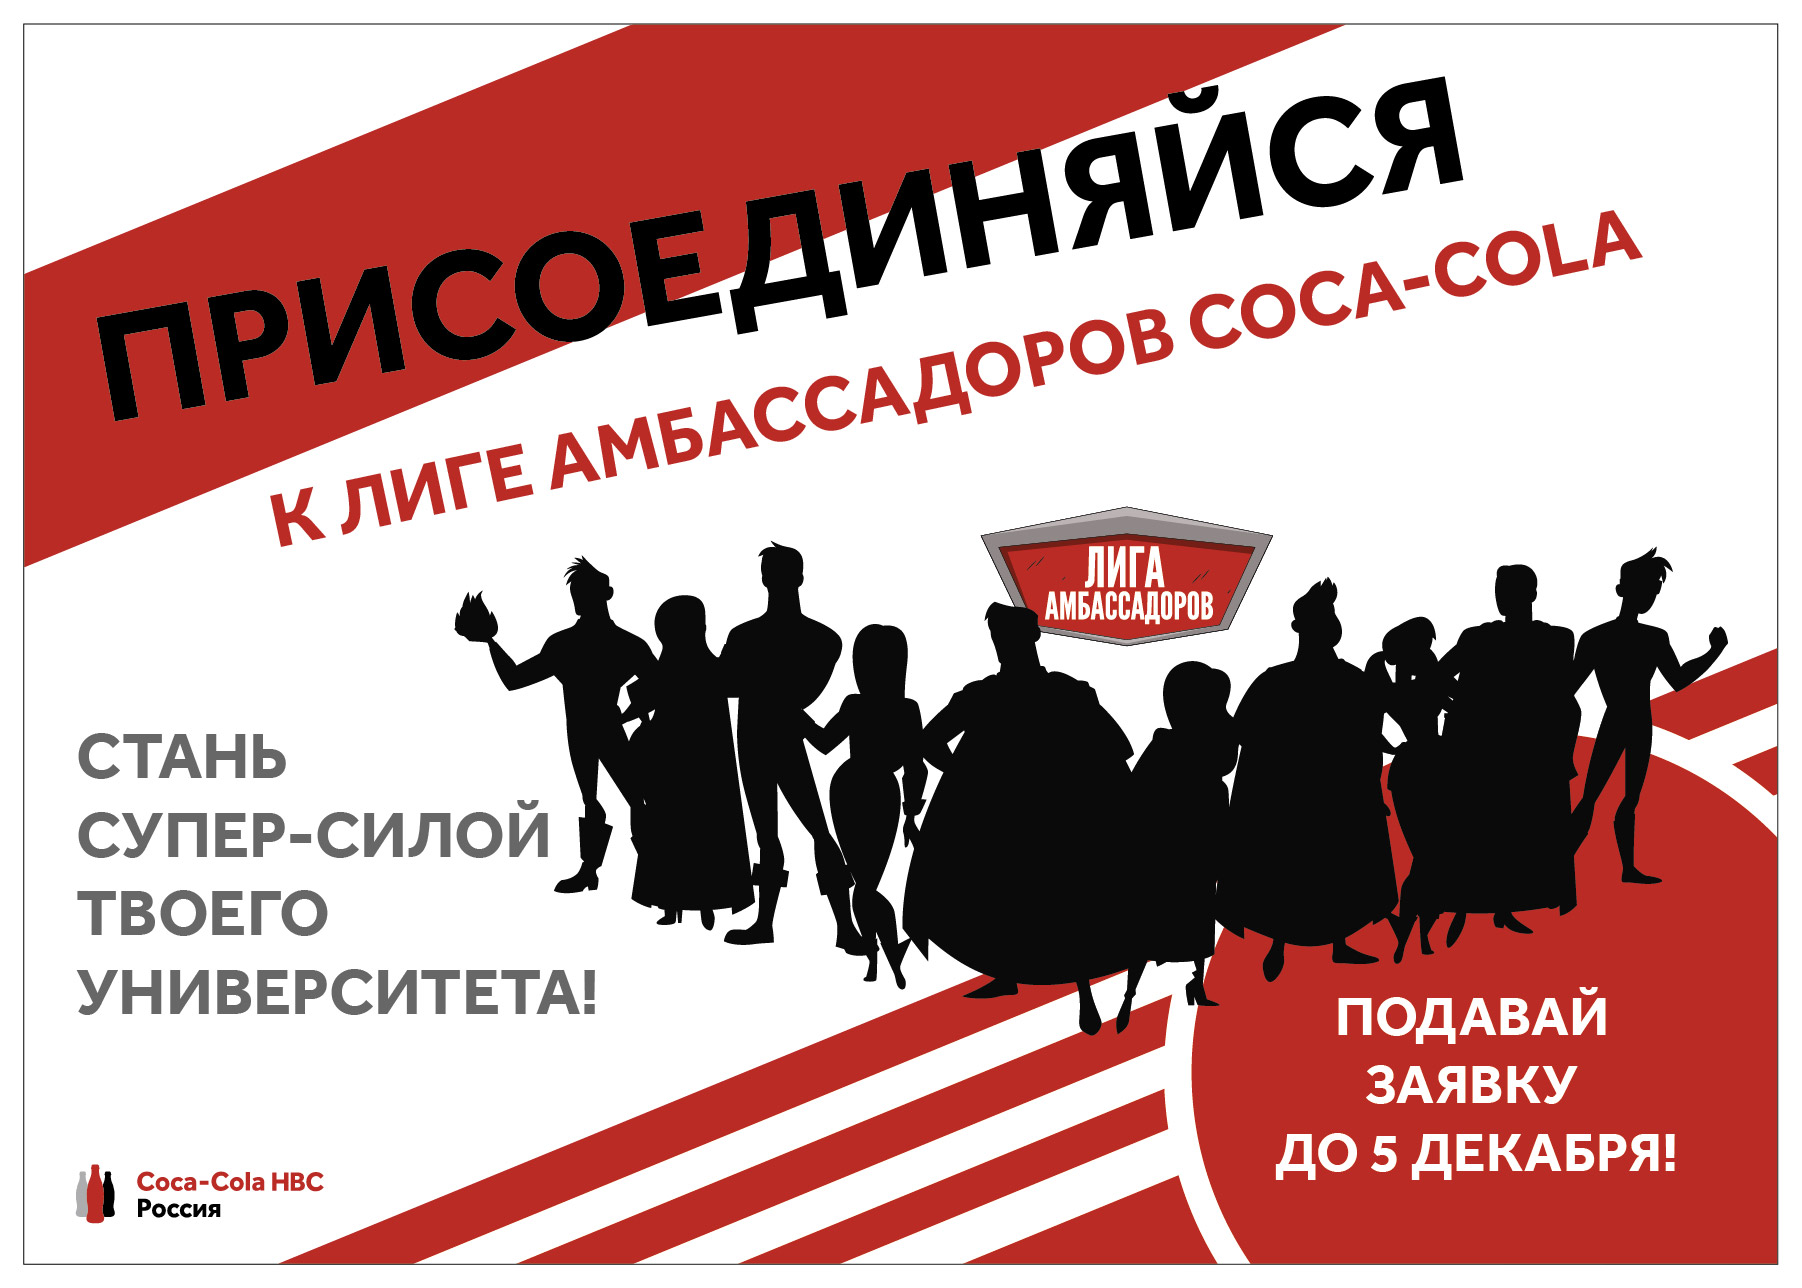 Coca-Cola HBC Россия создает «Лигу амбассадоров» среди студентов, Coca-Cola HBC Россия, Coca-Cola новости, Лига амбассадоров, Потенциальные «амбассадоры» Coca-Cola, энергичные студенты, харизматичные студенты, экскурсии на заводы и в офисы, тренинги по развитию личностных компетенций